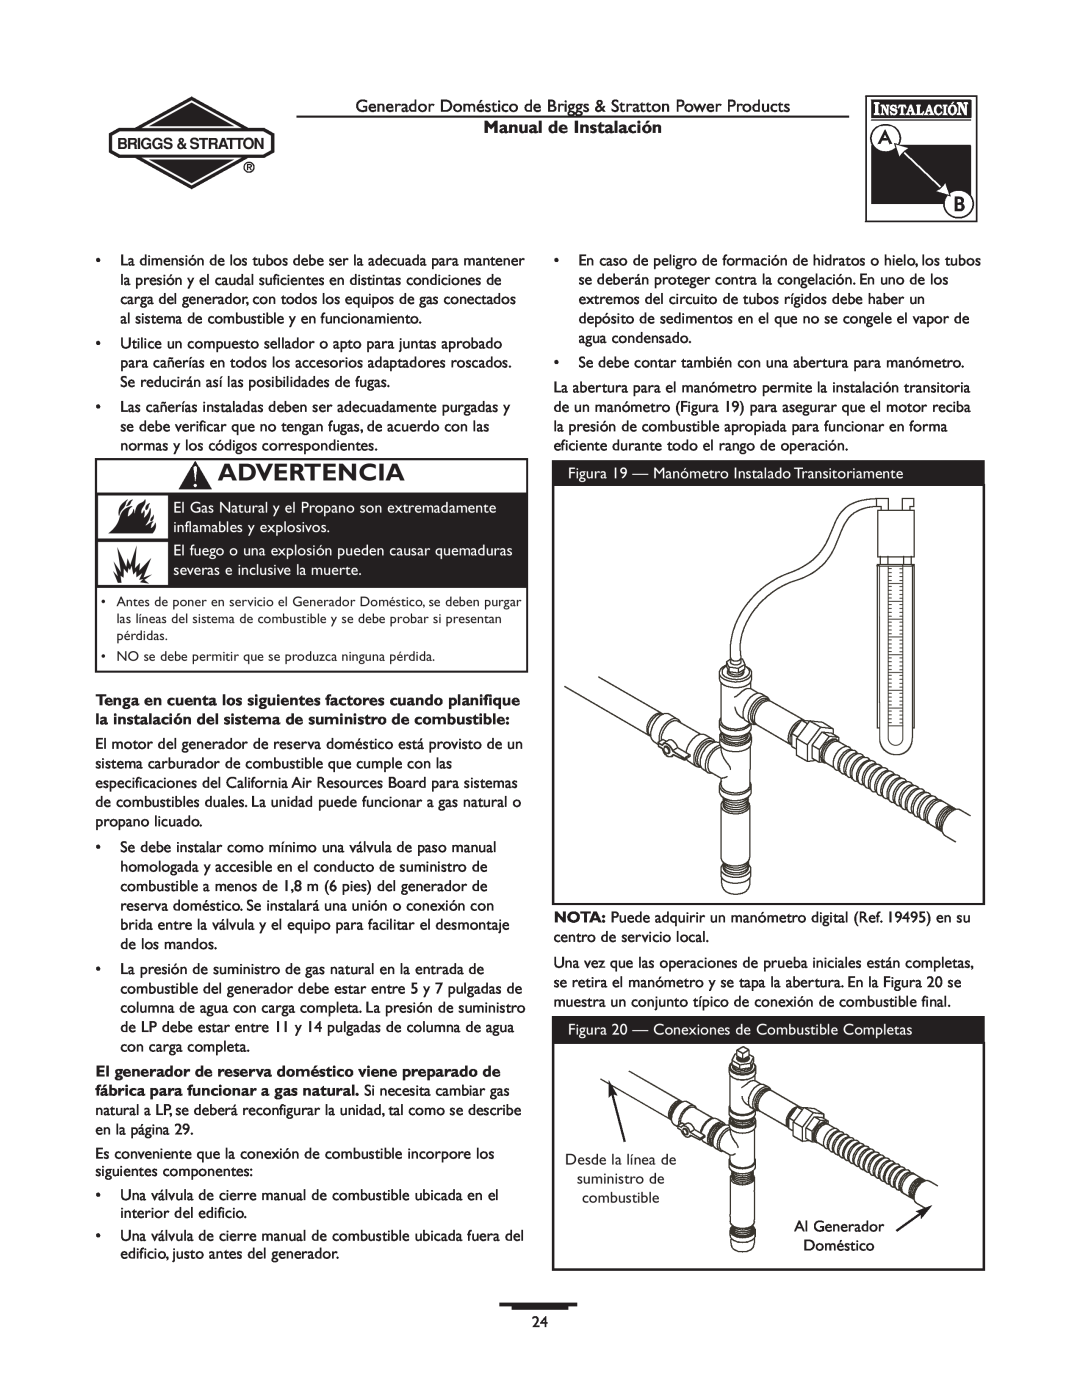 Briggs & Stratton 01938-0, 01815-0 Advertencia, Manual de Instalación, Figura 19 - Manómetro Instalado Transitoriamente 